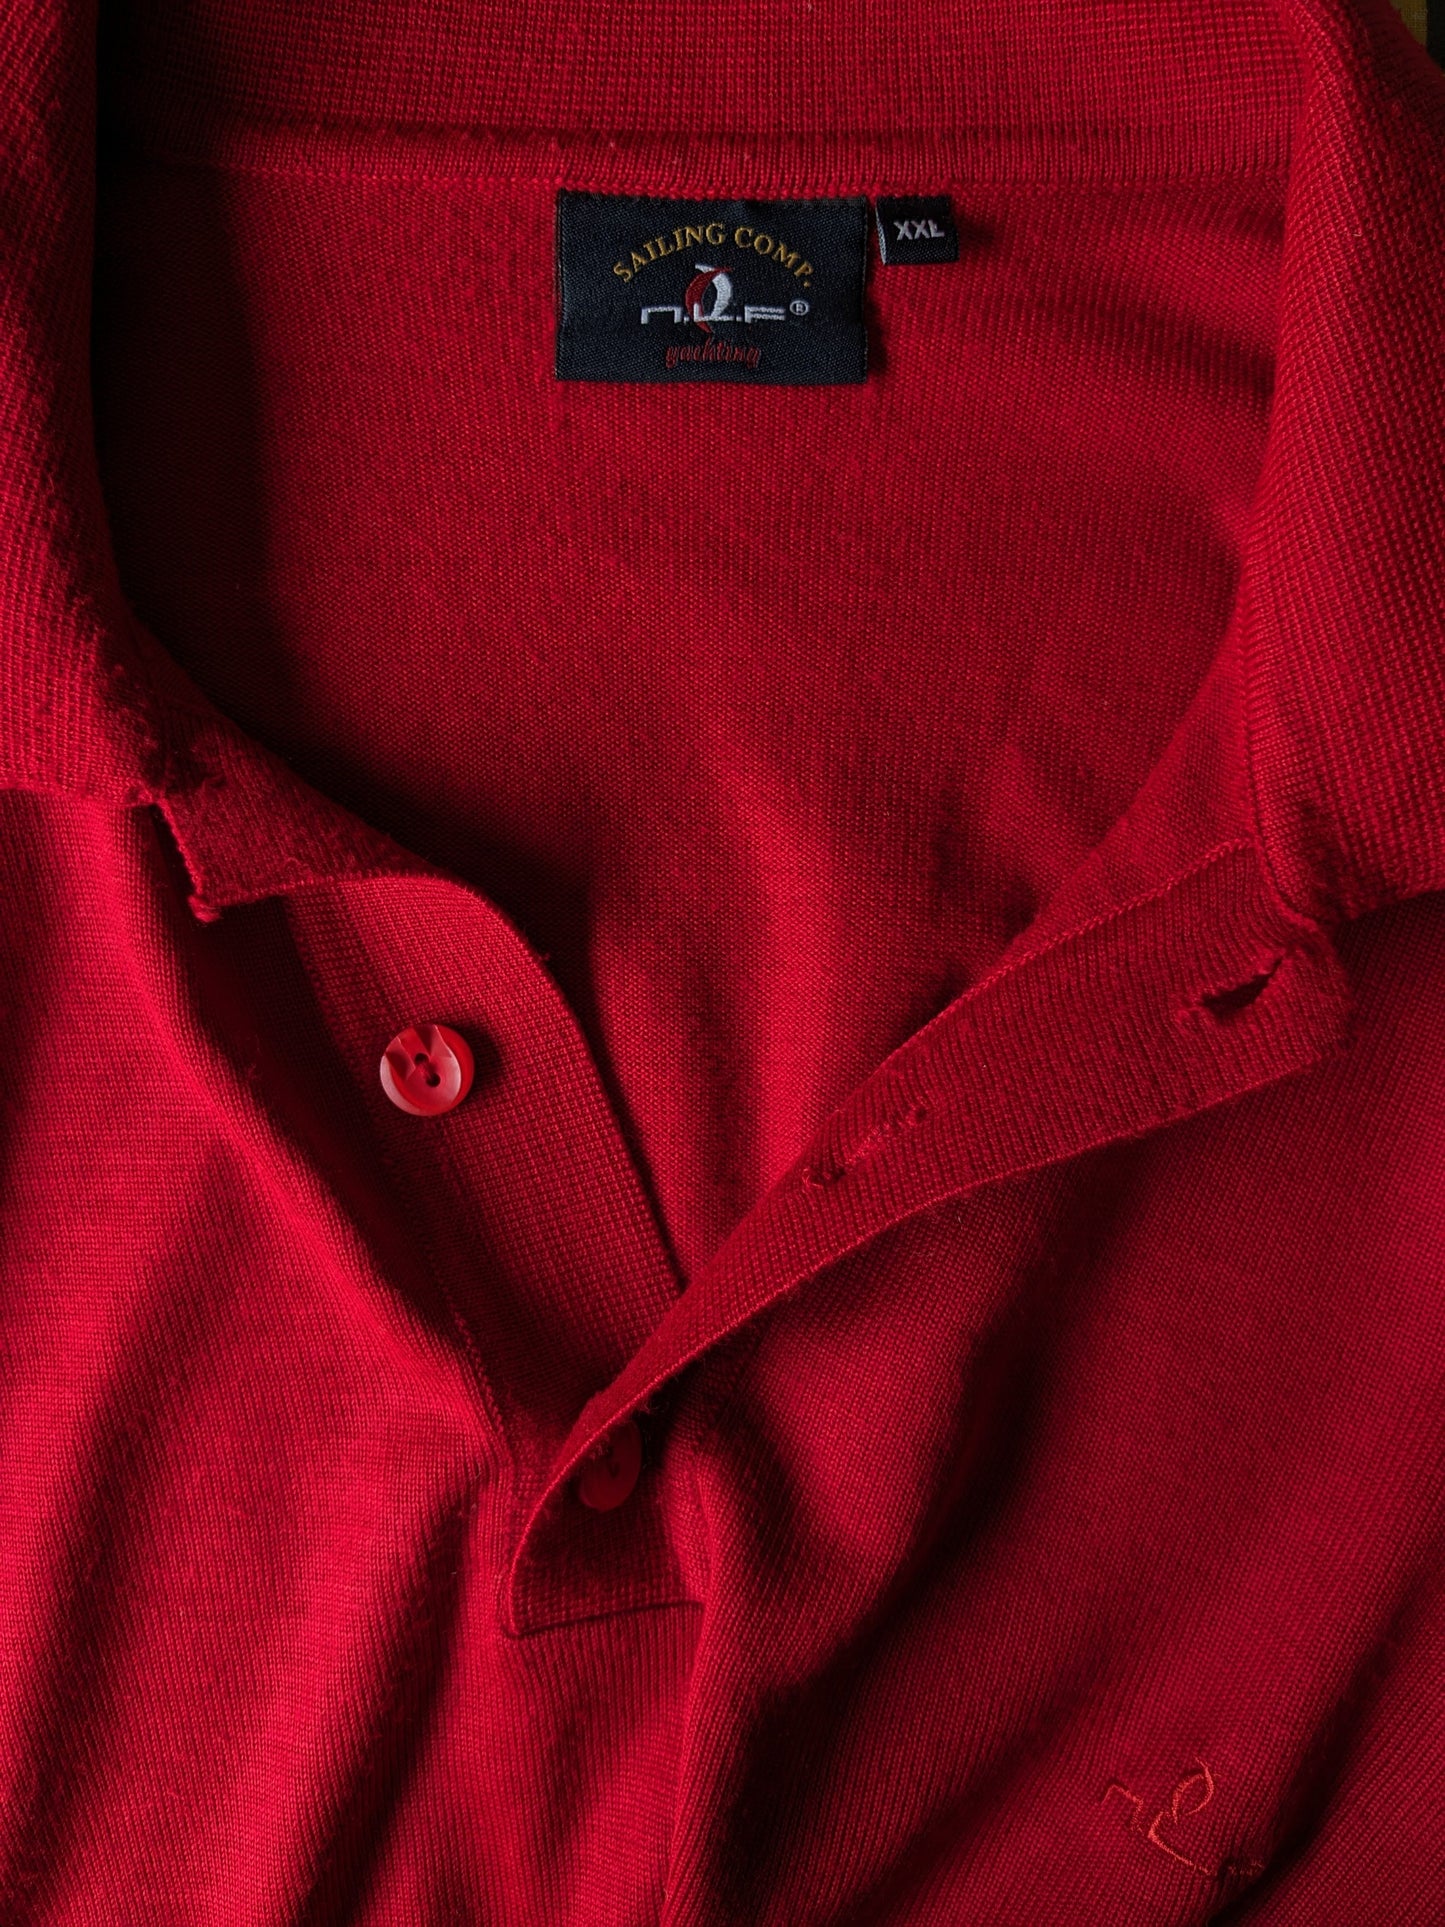 Vintage N.L.F. Maglione polo di lana con bottoni. Rosso colorato. Dimensione 2xl / xxl. 50% lana.